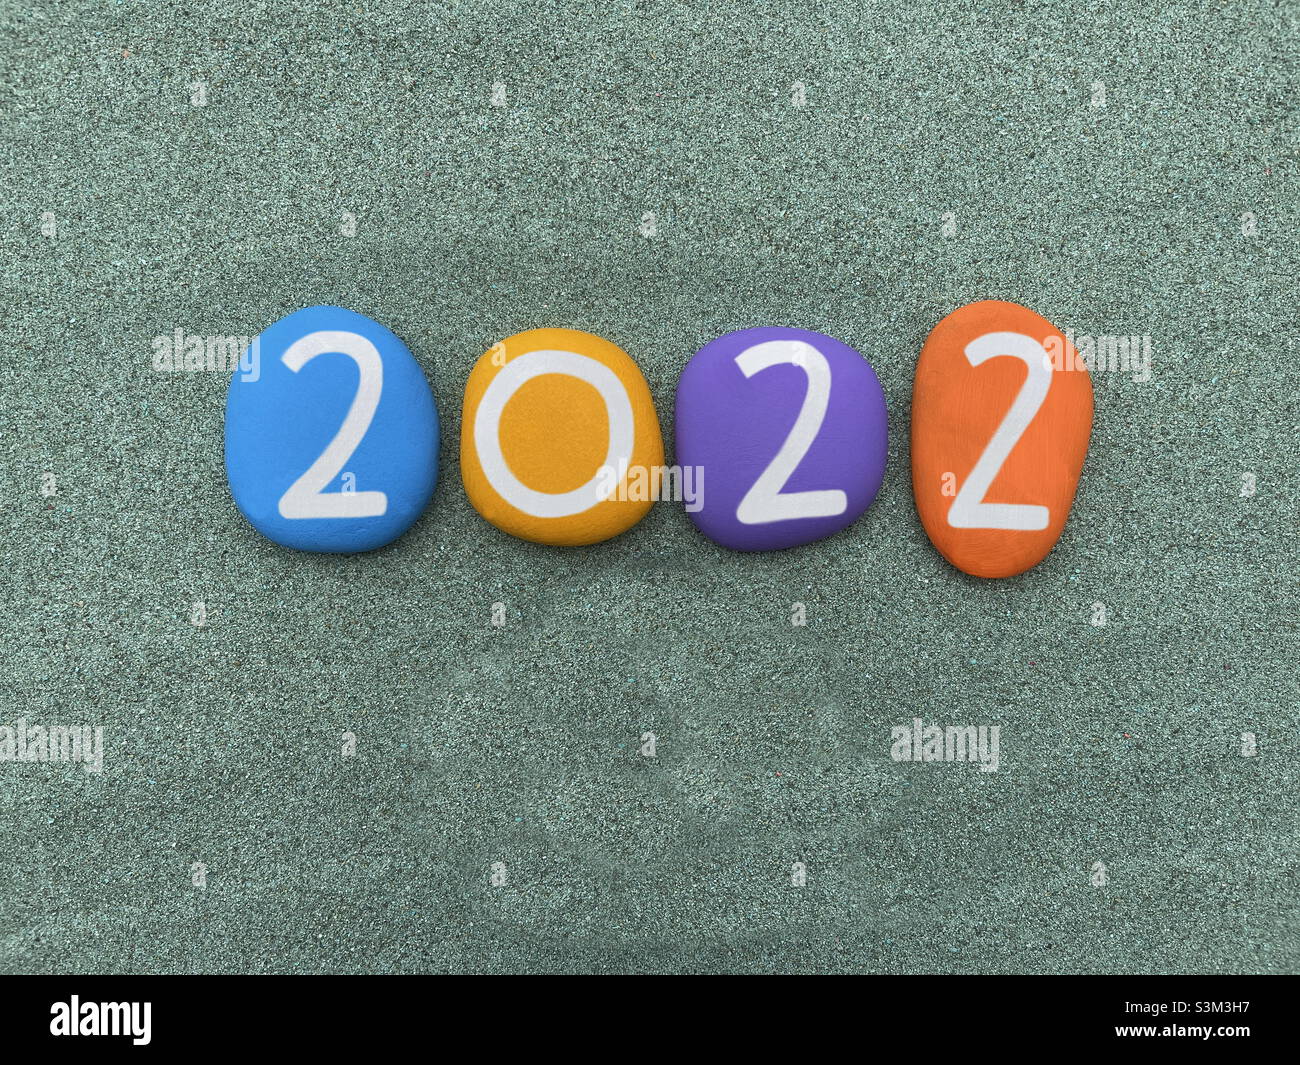 Année 2022 composée de plusieurs numéros de pierre peints à la main sur sable vert Banque D'Images